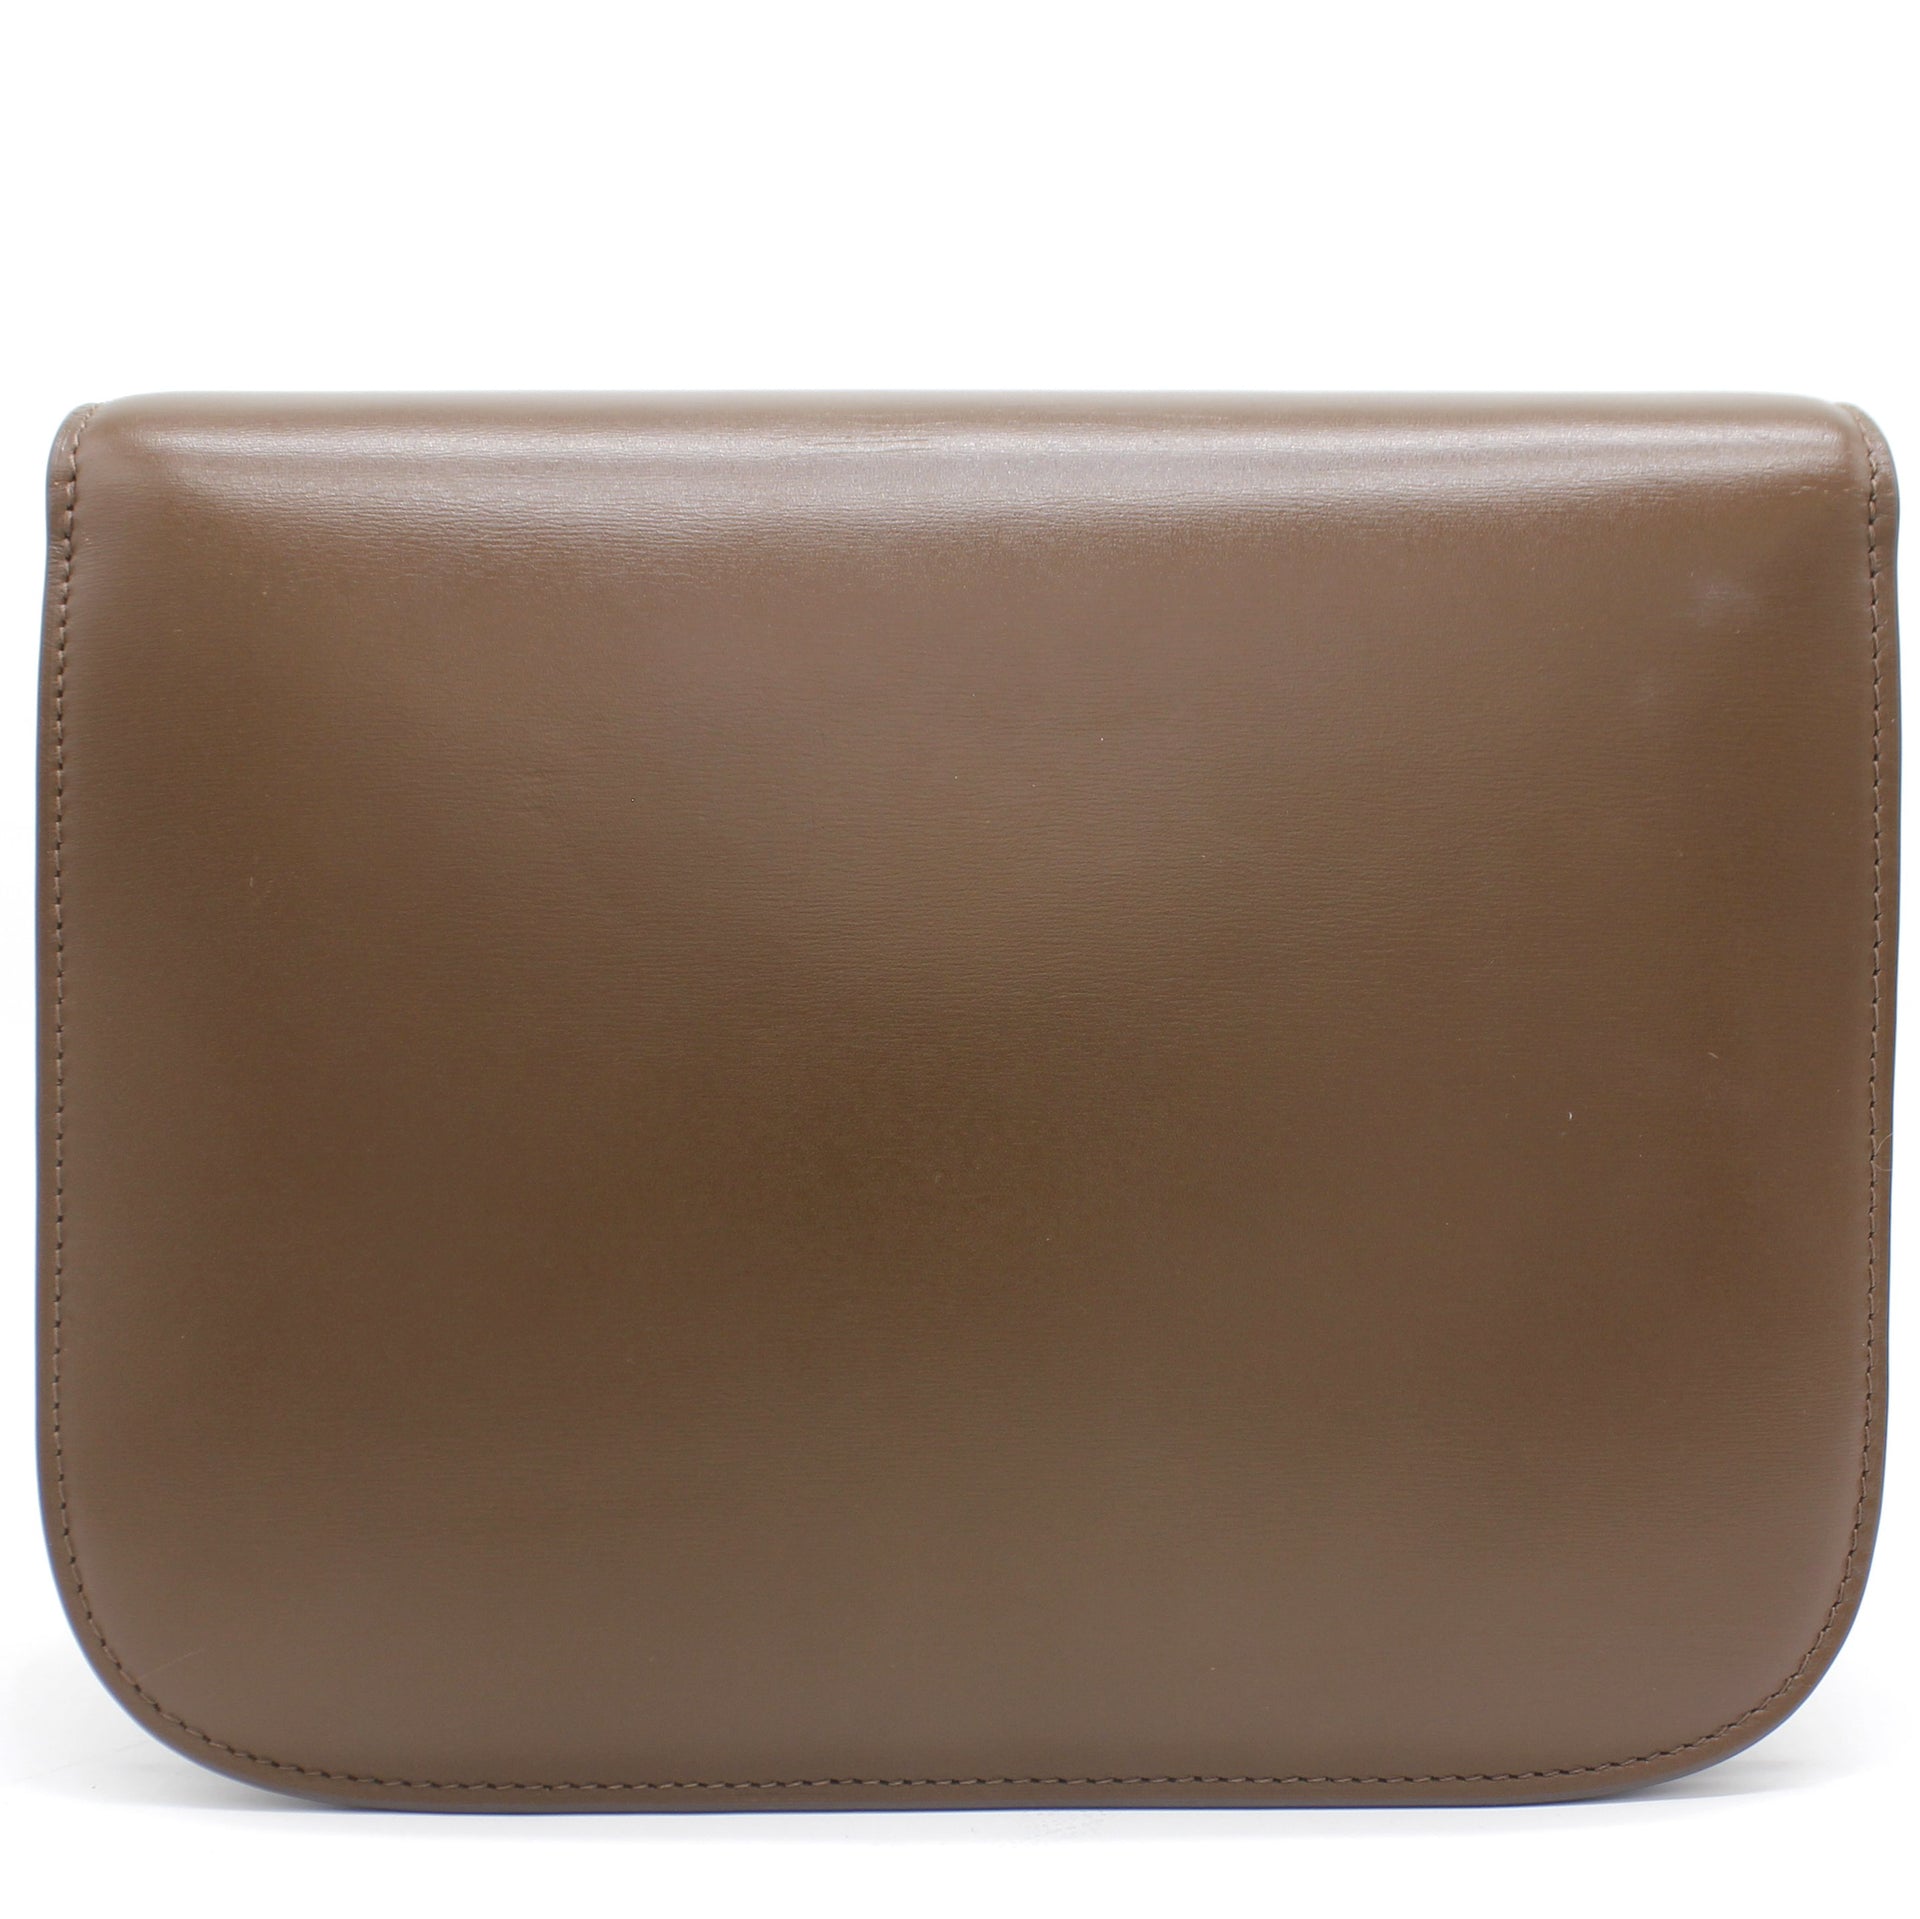 Medium Classic Box Bag Brown